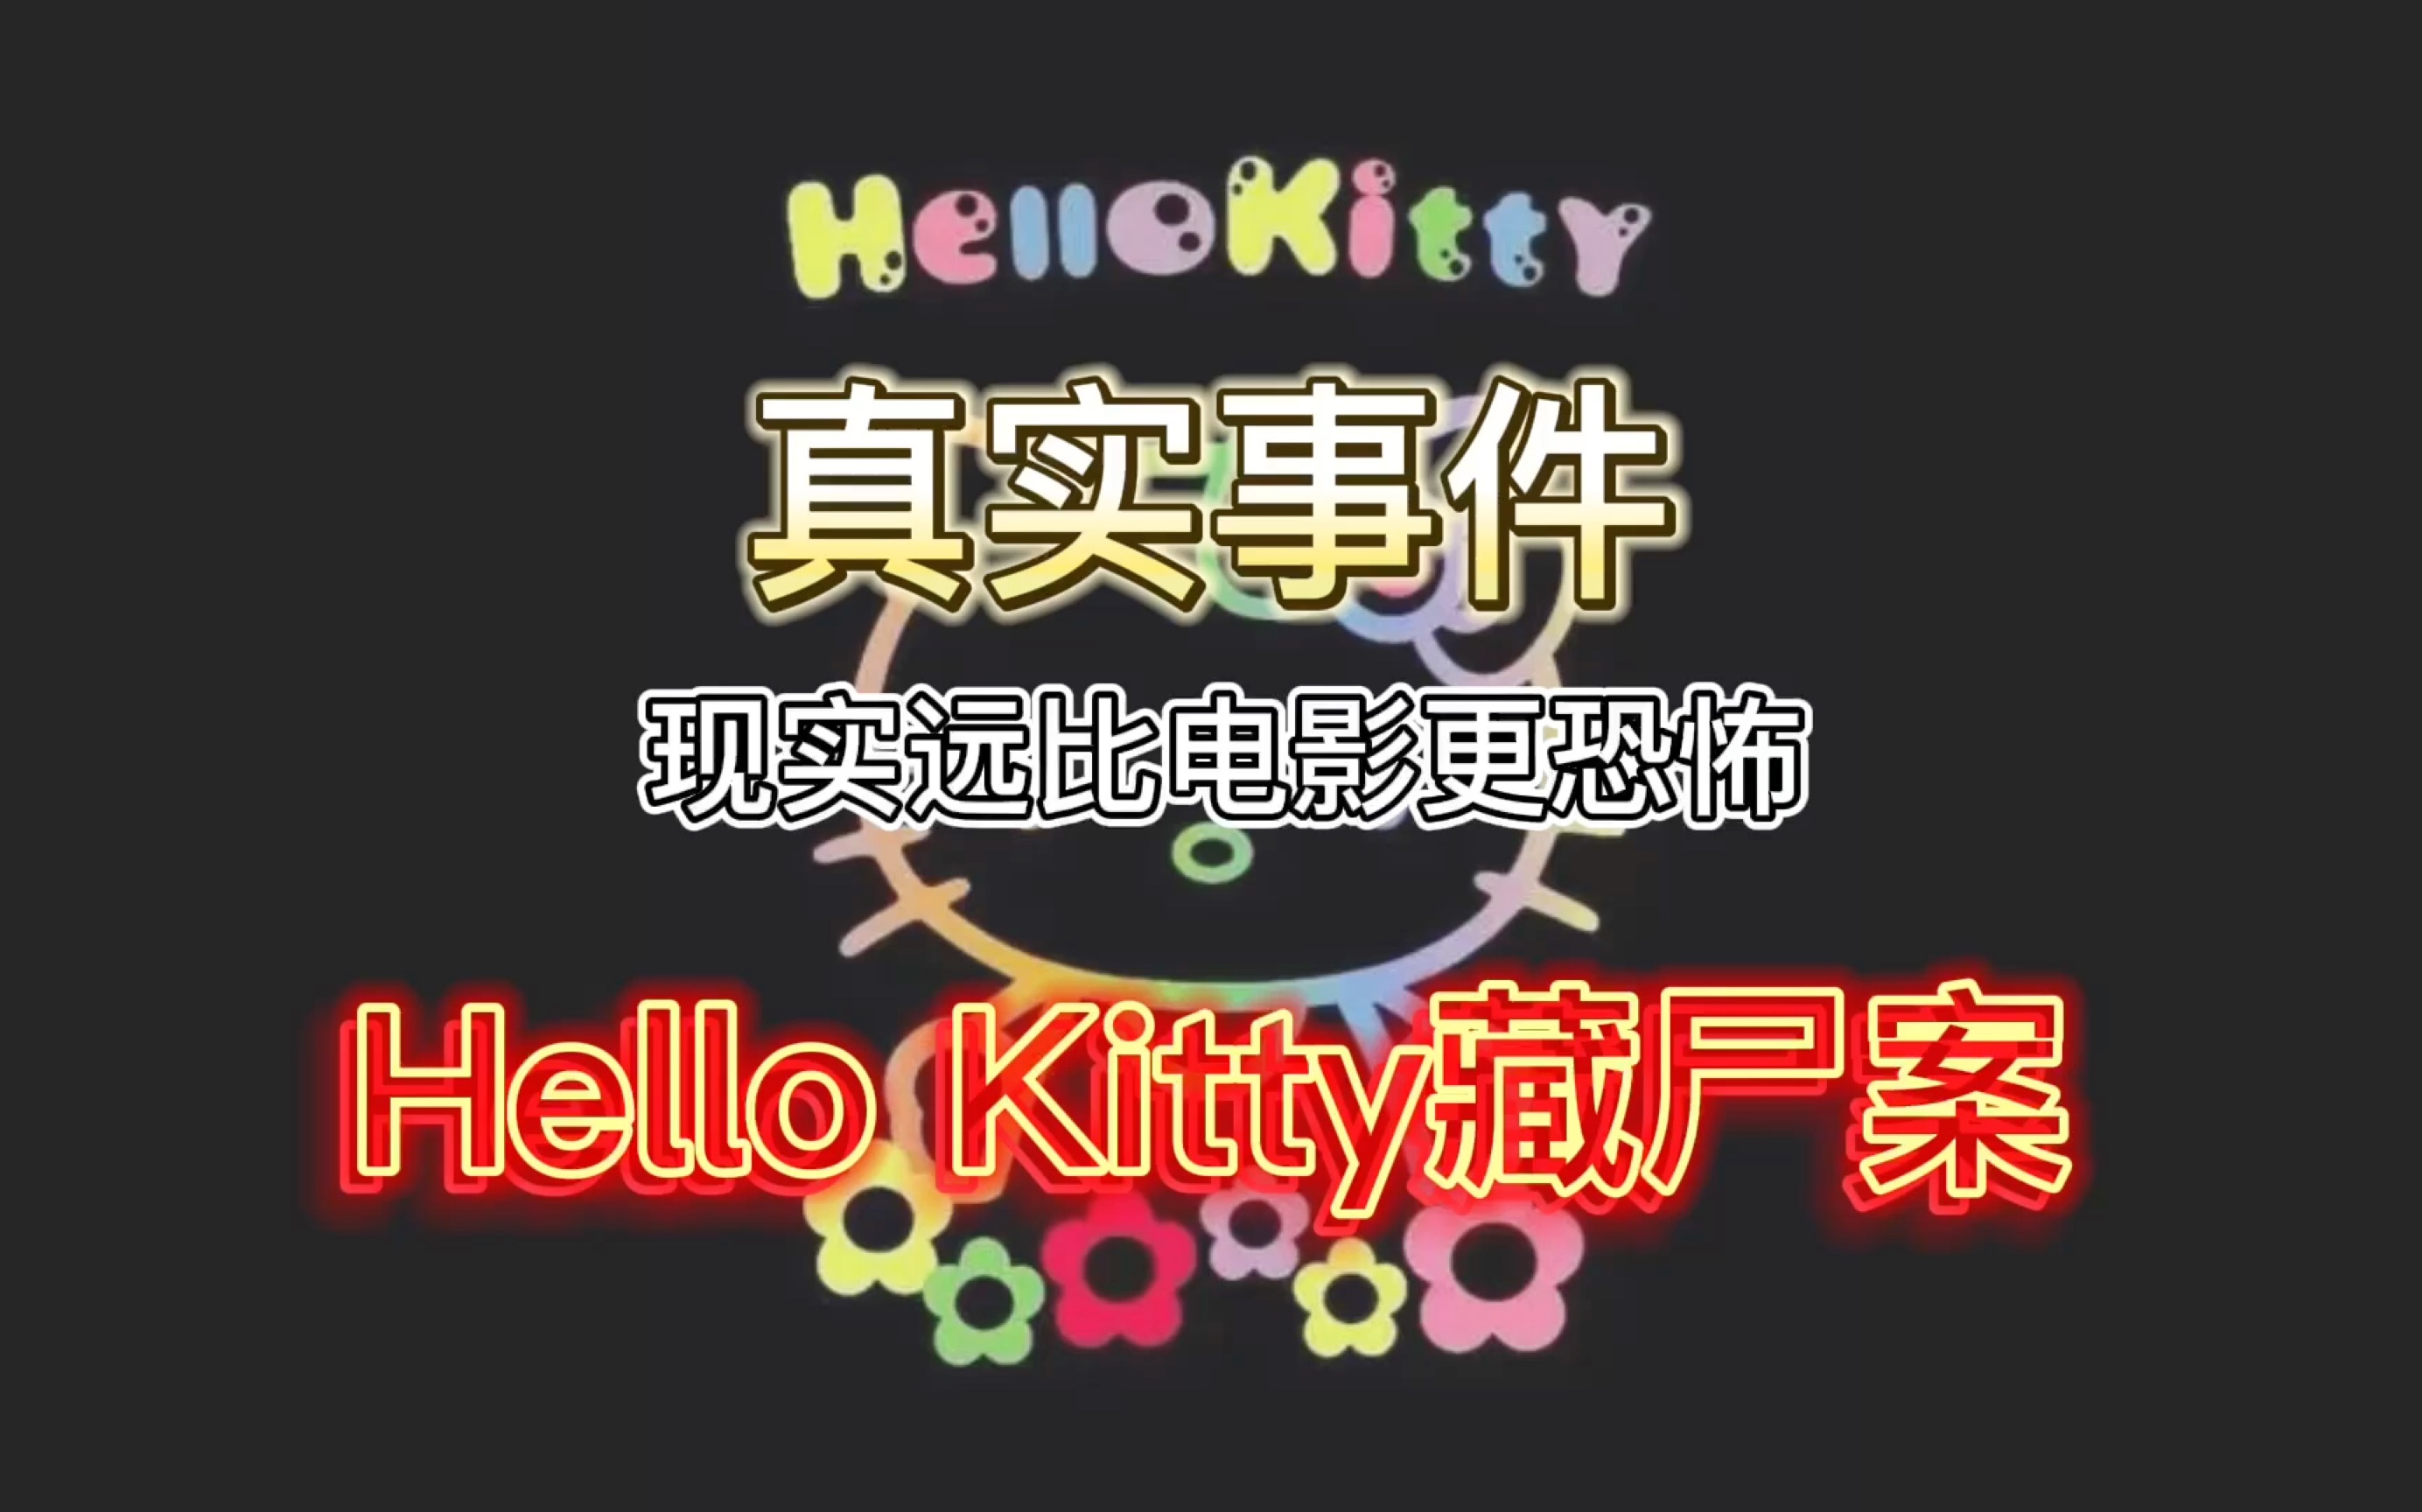 [图]香港十大奇案之Hello Kitty藏尸案，肢解头颅装入娃娃